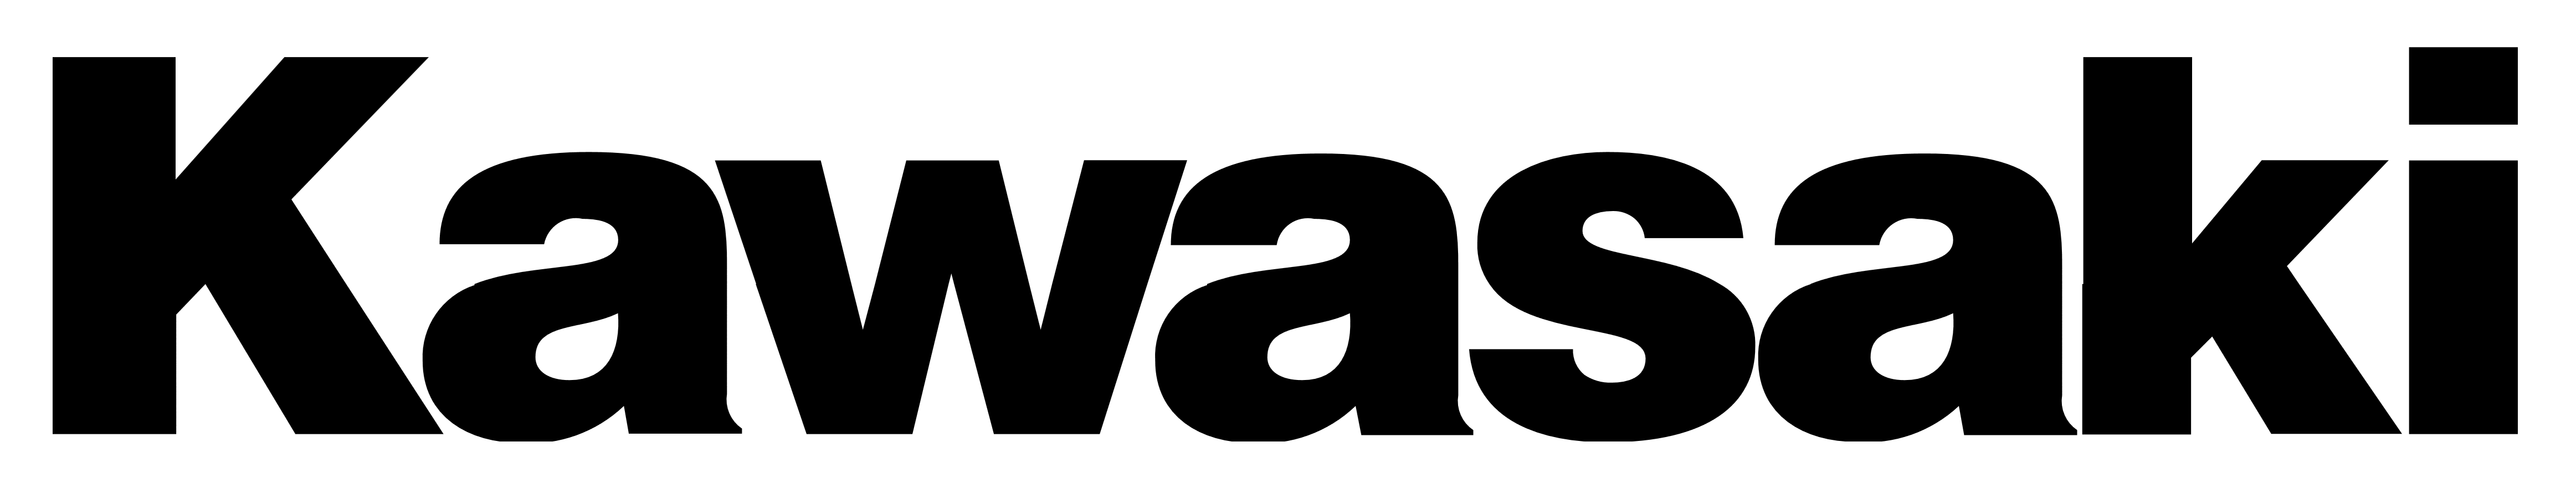 كاواساكي logo PNG صورة